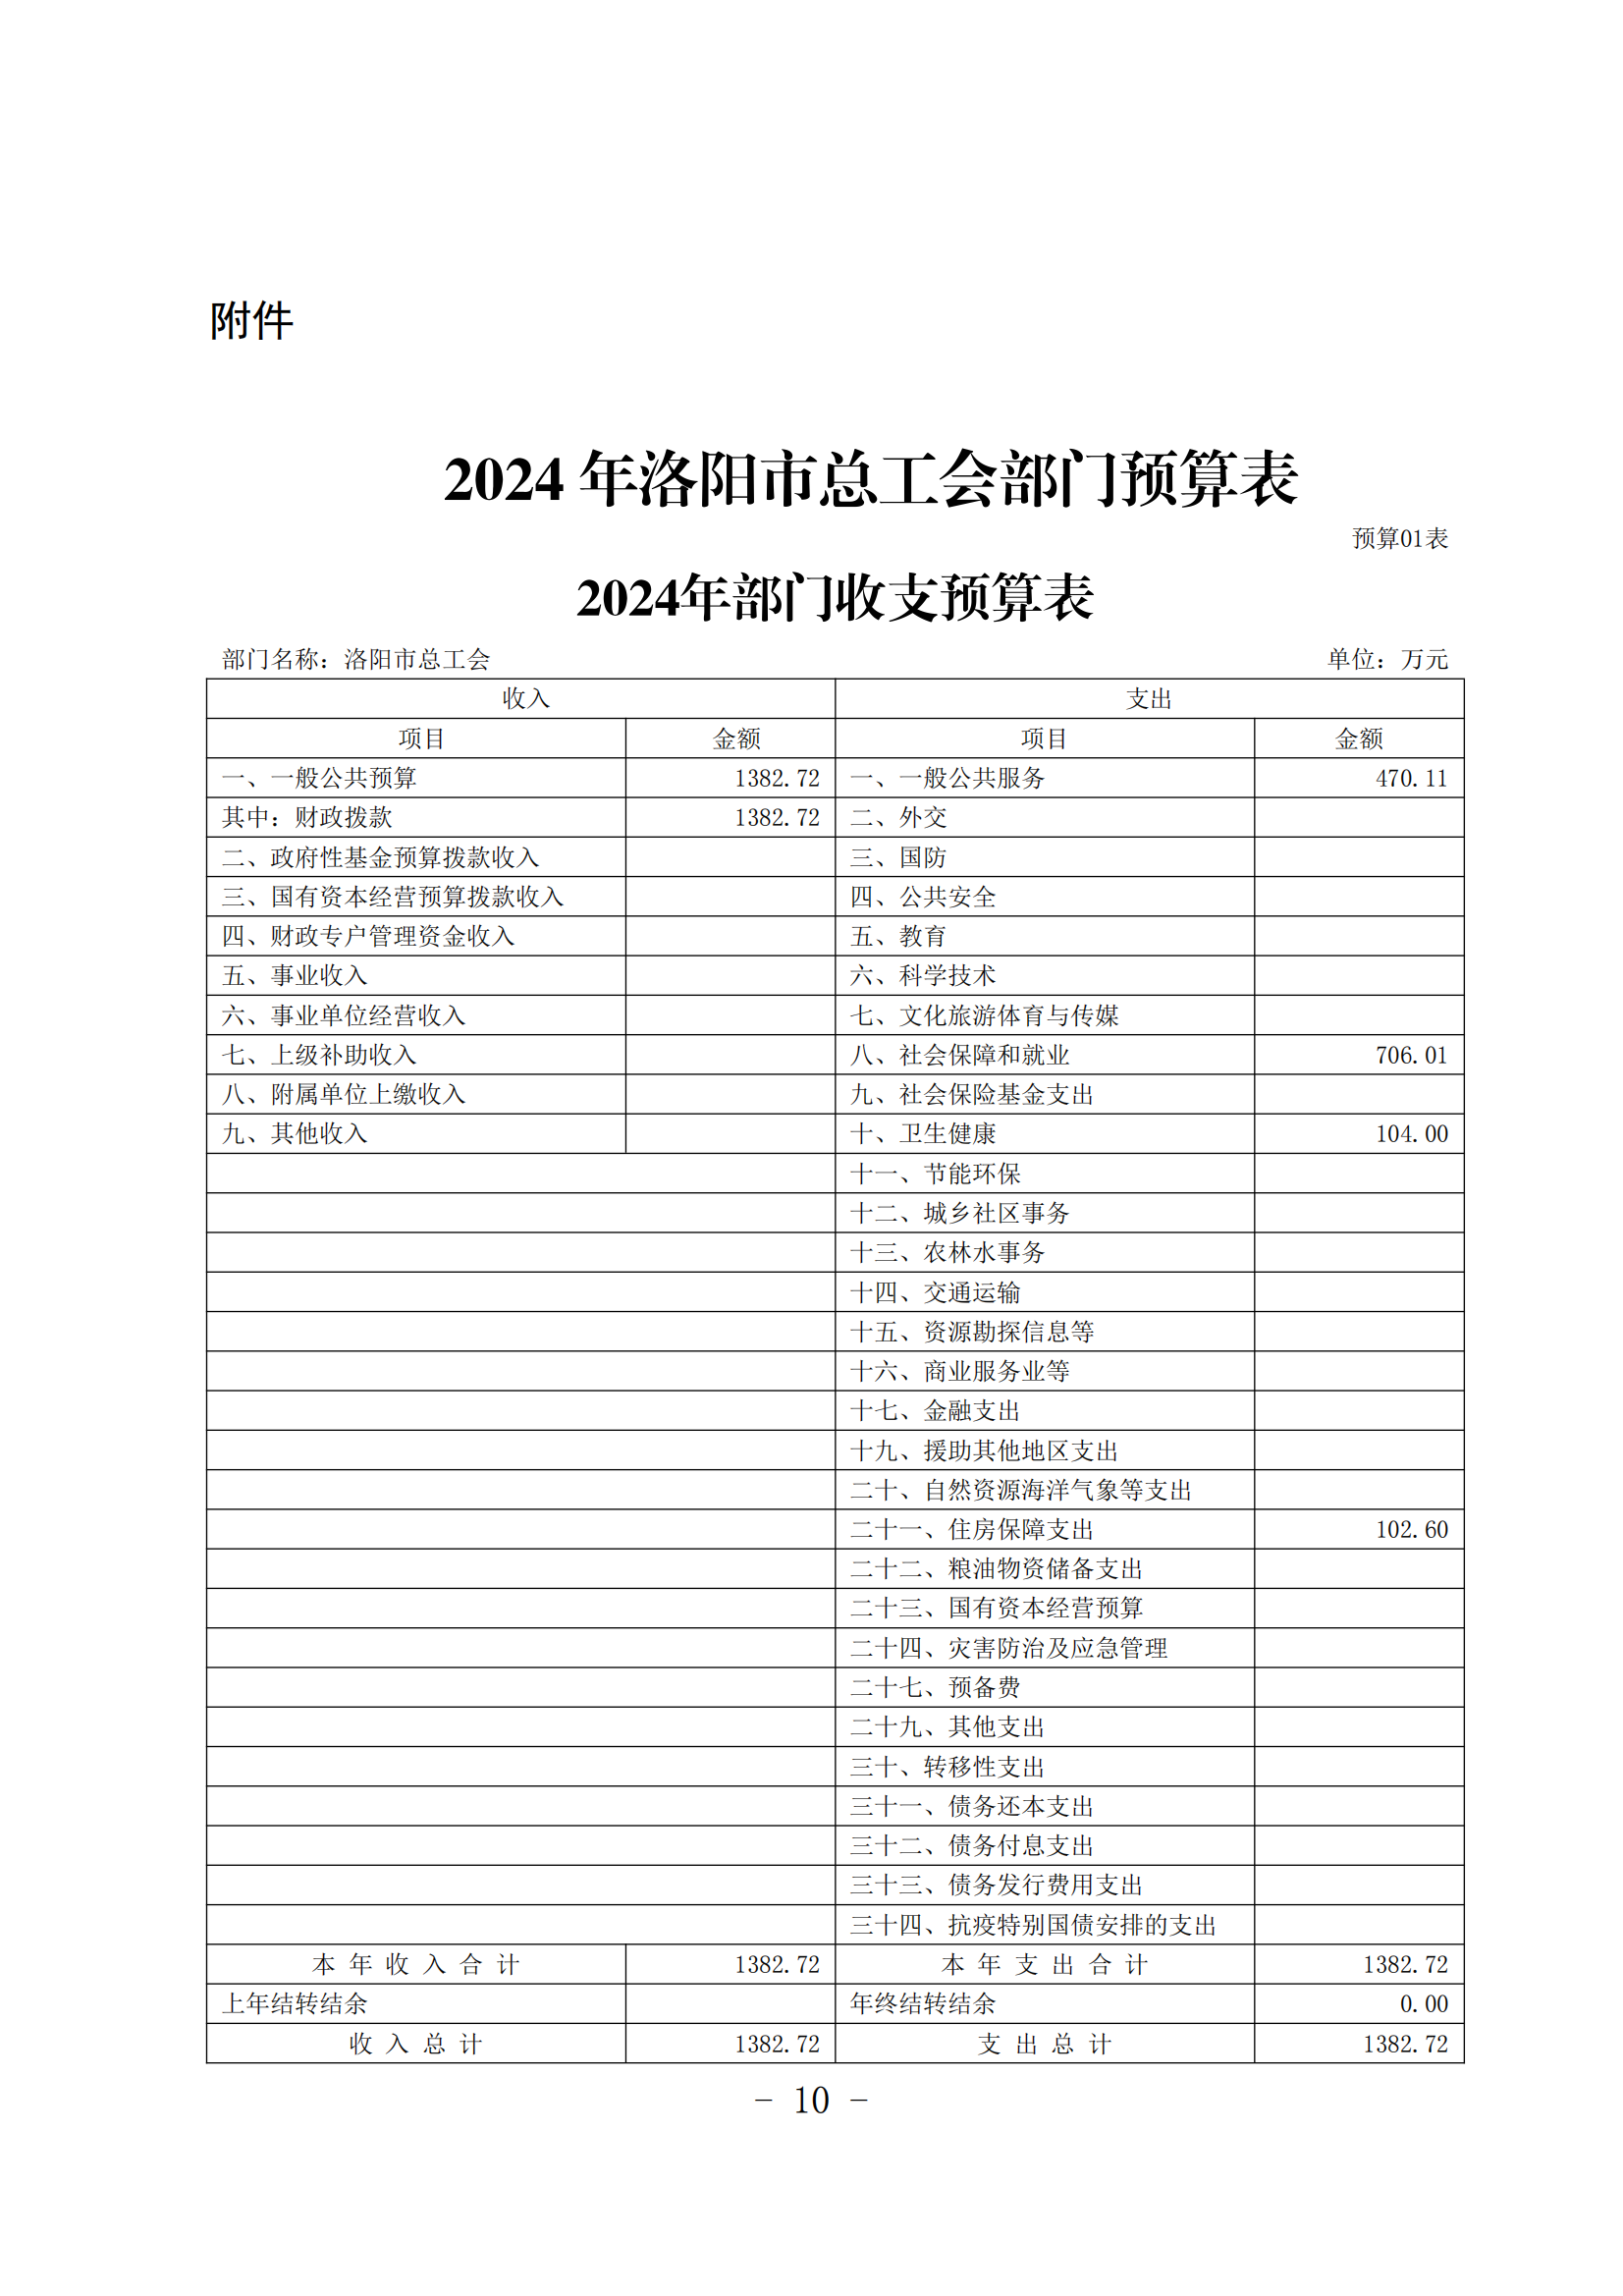 2024年洛阳市总工会部门预算公开(1)_09.png